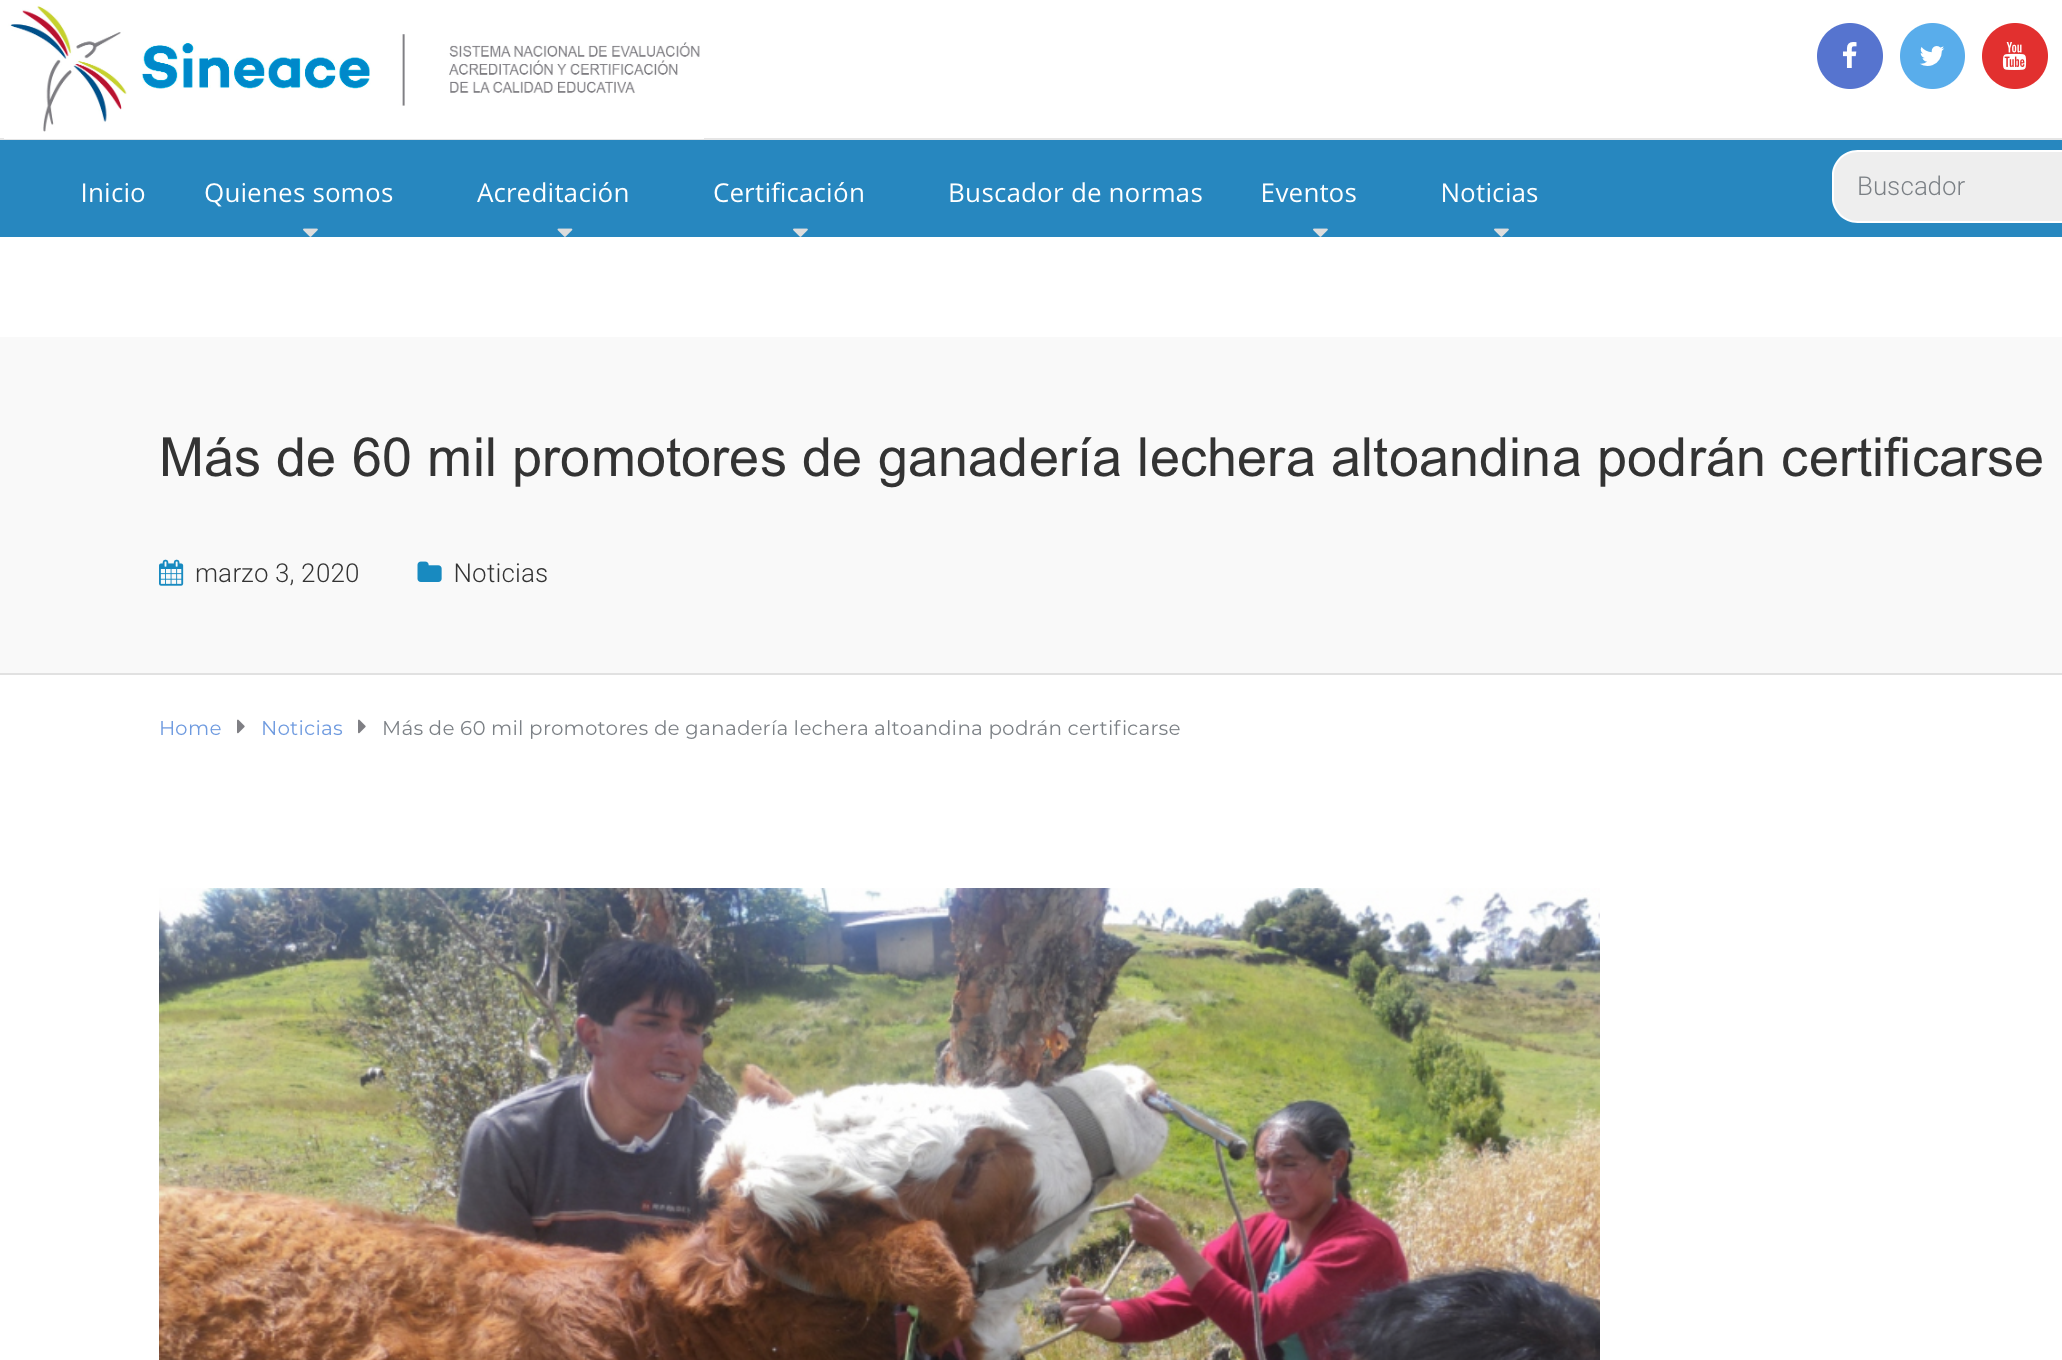 Más de 60 mil promotores de ganadería lechera altoandina podrán certificarse